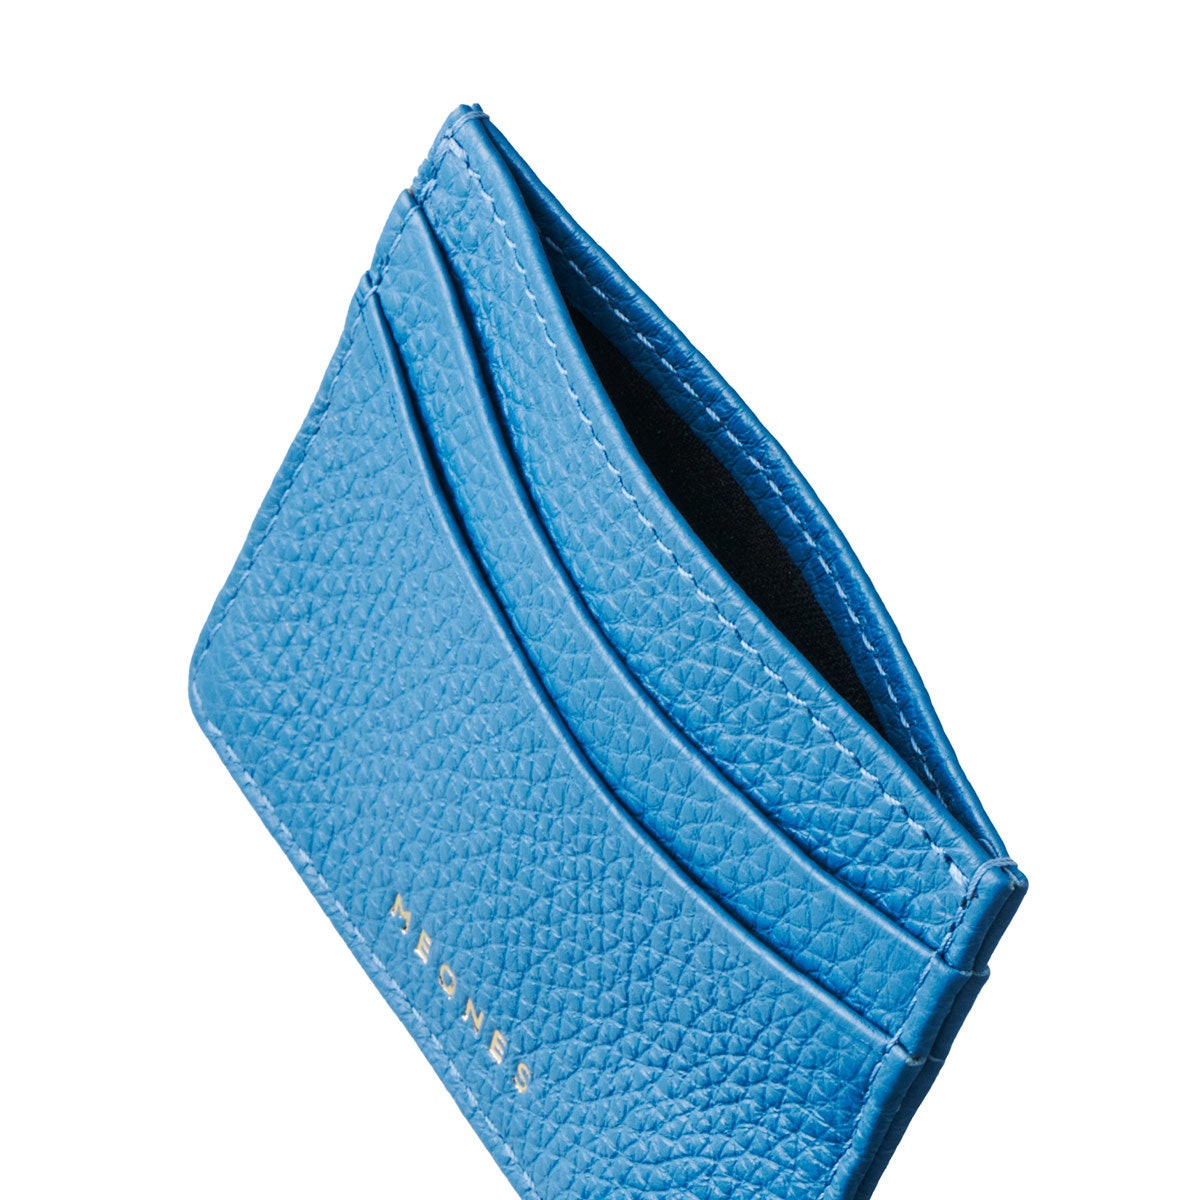 Calvin Klein- Saffiano Leather Slim Bifold Wallet - Crayon Blue